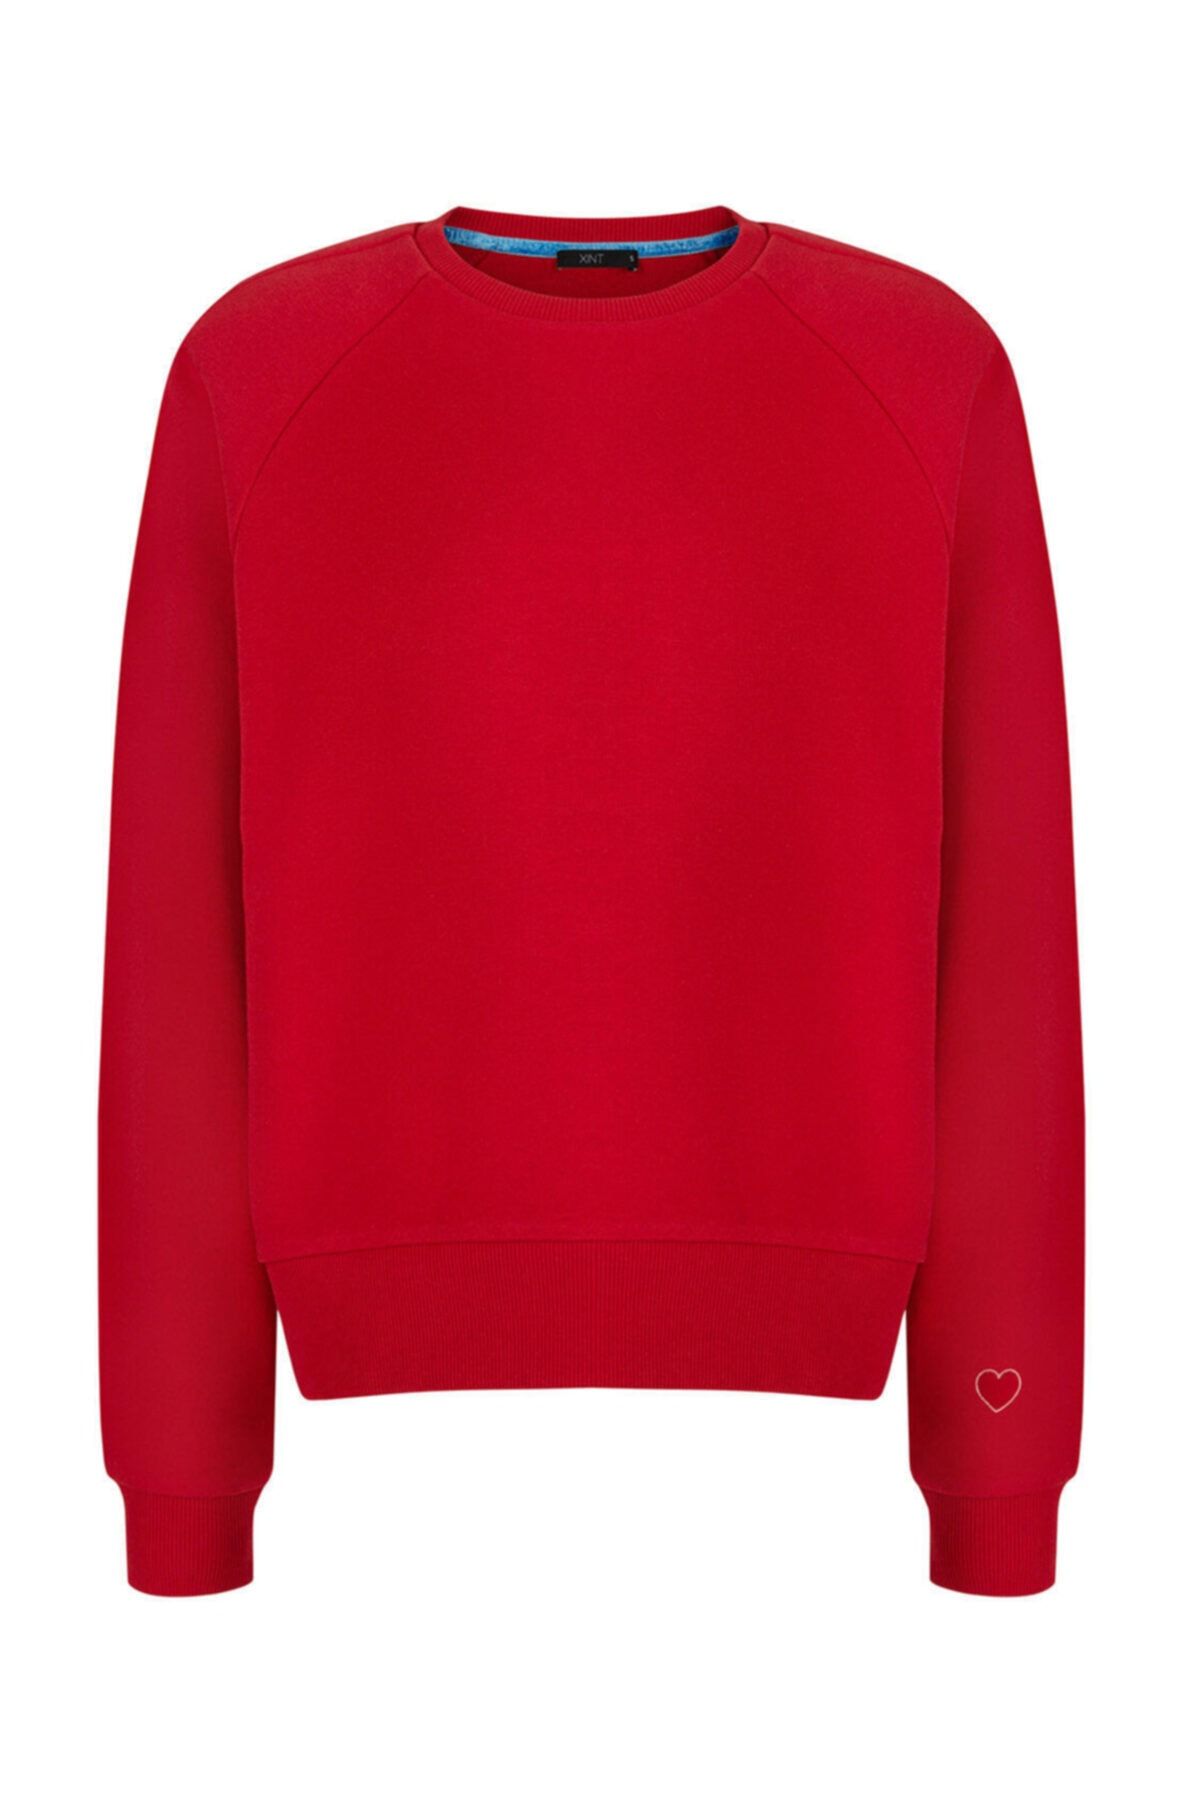 Xint Kadın Kırmızı Pamuklu Rahat Kesim Vatkalı Sweatshirt